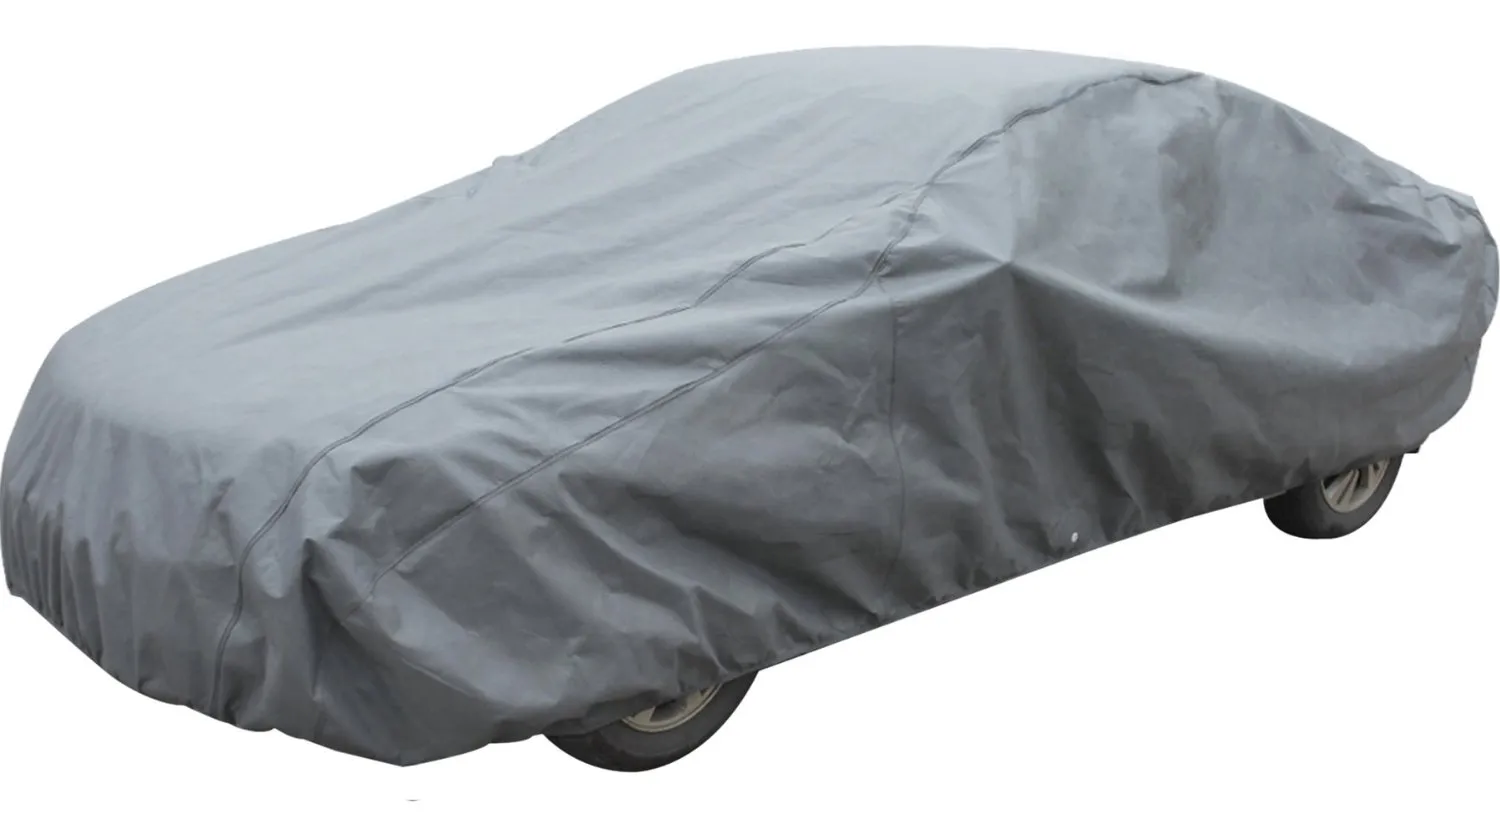 Accessori Leader Xguard 5 Layers Car Cover impermeabile Respirabile Indoor Indoor Automobili fino a 15'4 